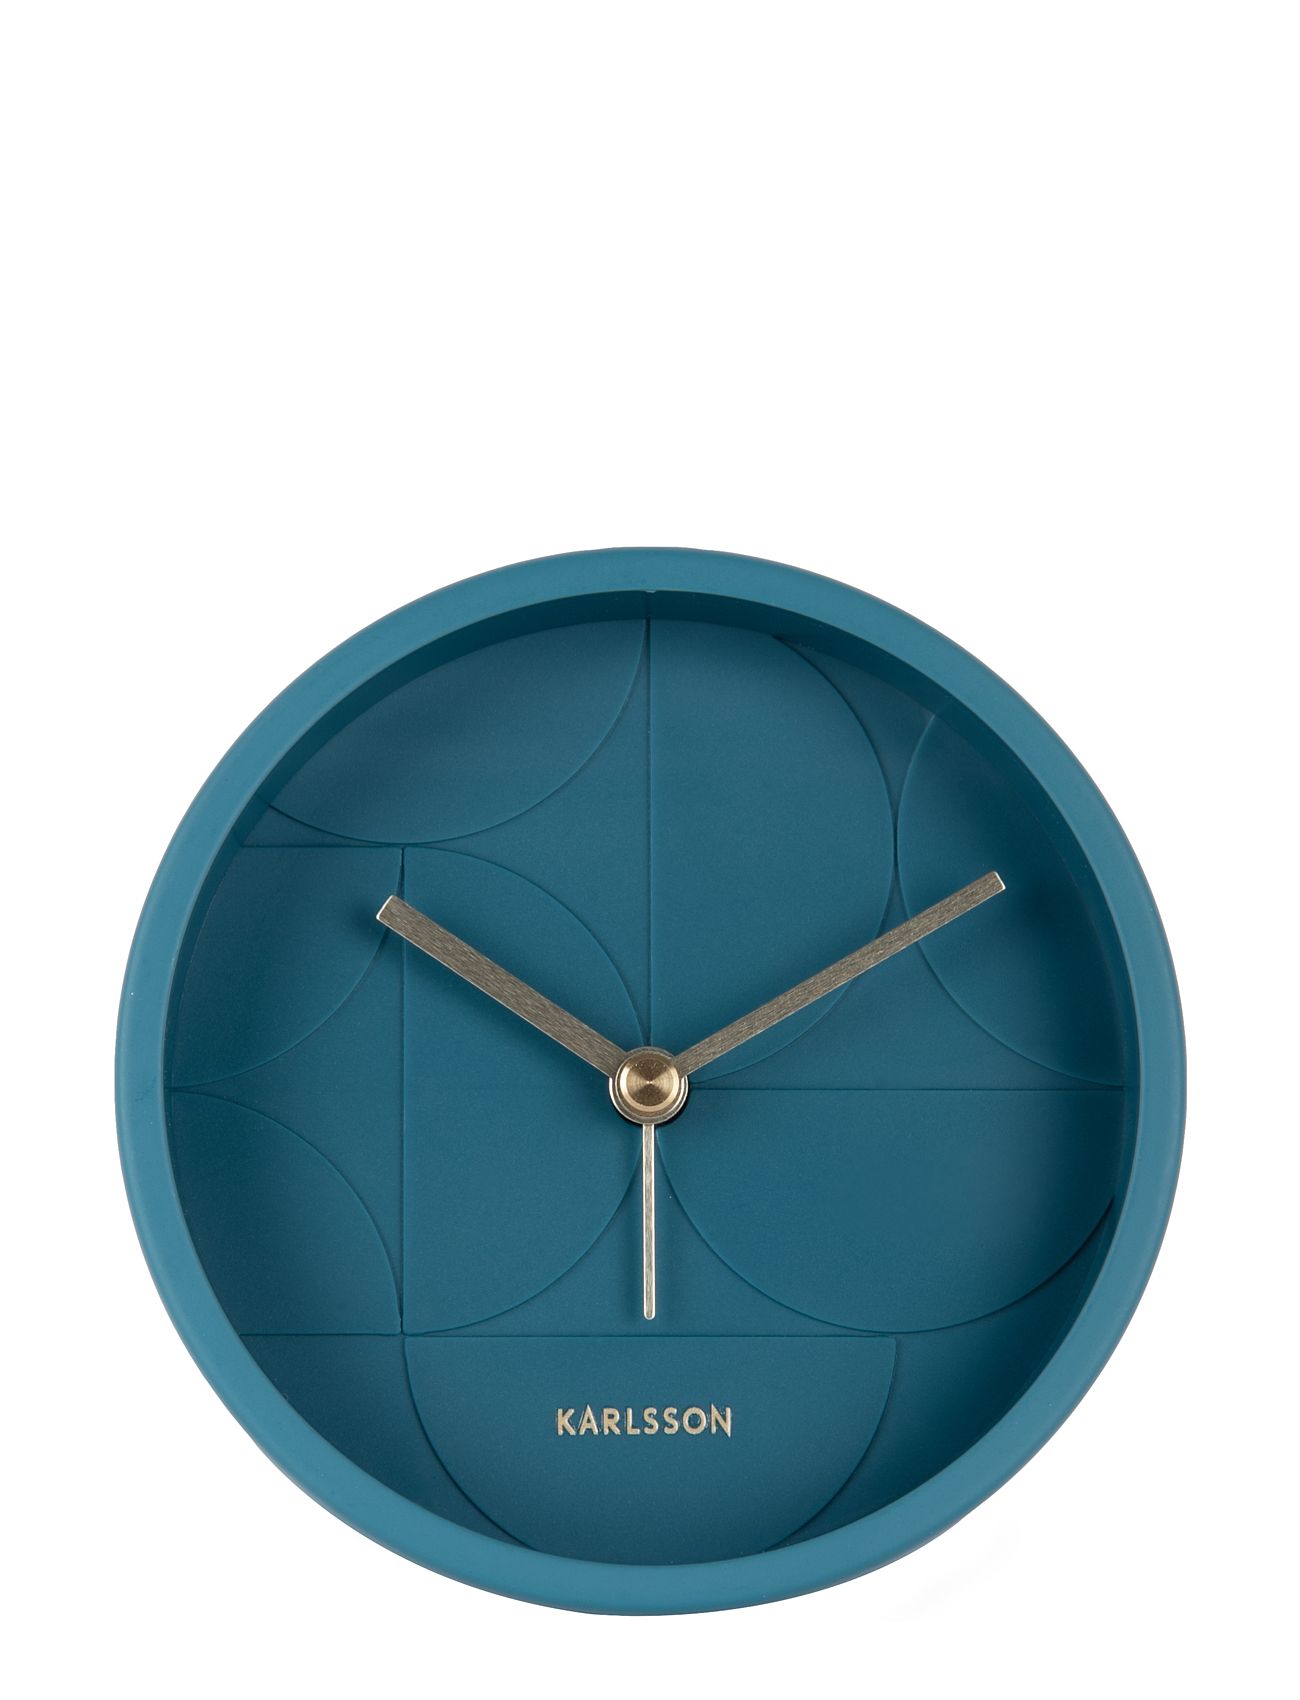 KARLSSON "Alarm Clock Echelon Circular Dark Blue Home Decoration Watches Alarm Clocks KARLSSON"